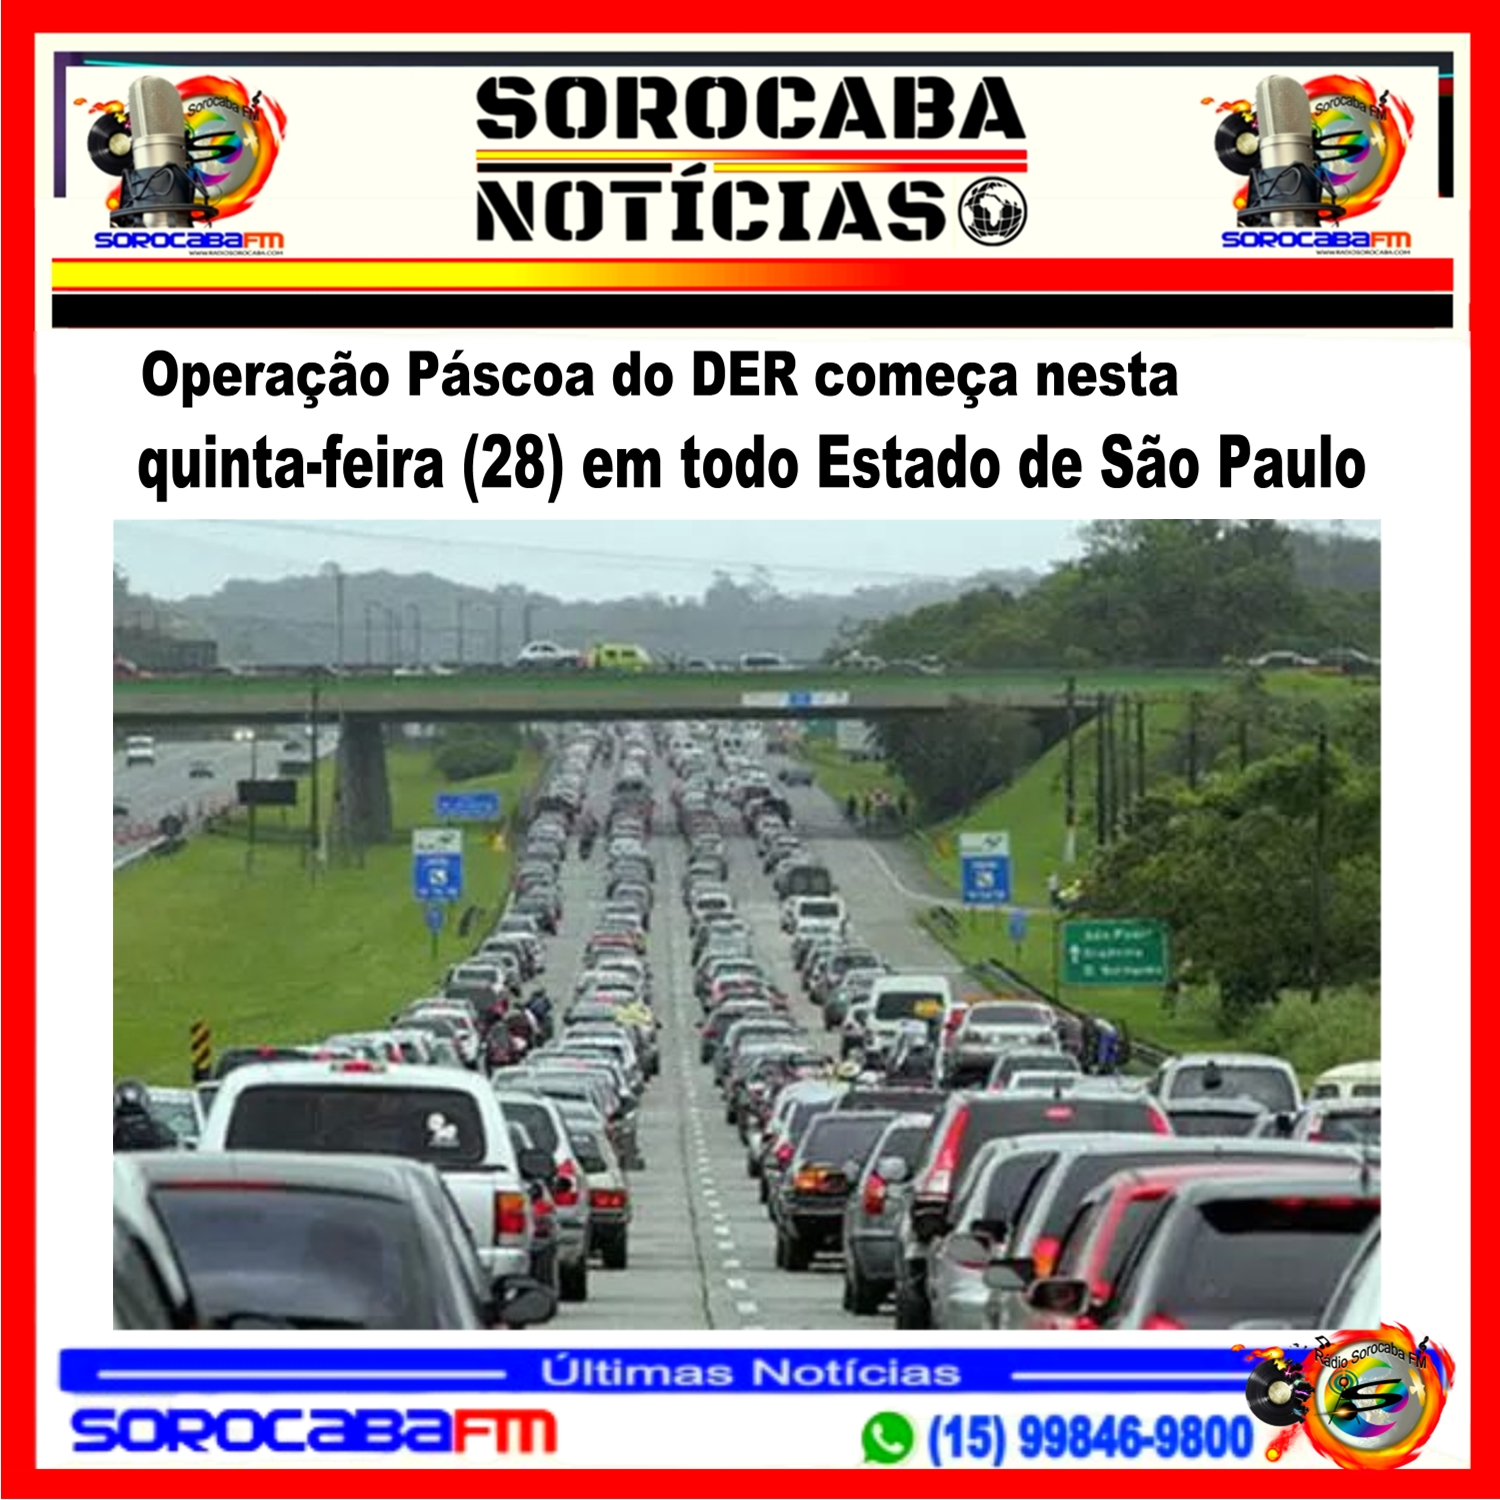 Operação Páscoa do DER começa nesta quinta-feira 28 em todo Estado de São Paulo